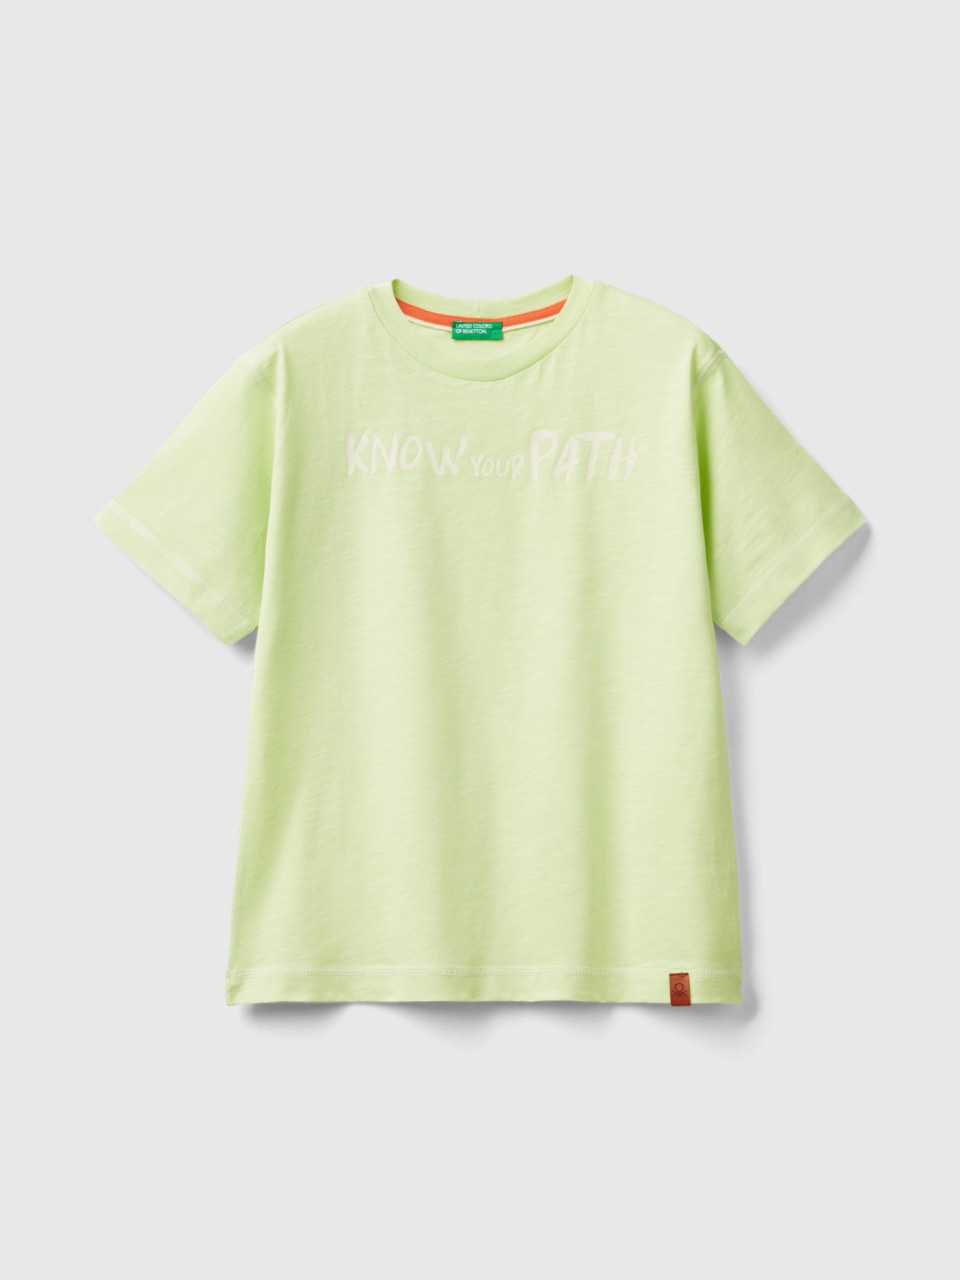 Benetton, Shirt Mit Fotoprint, Gelbgrün, male